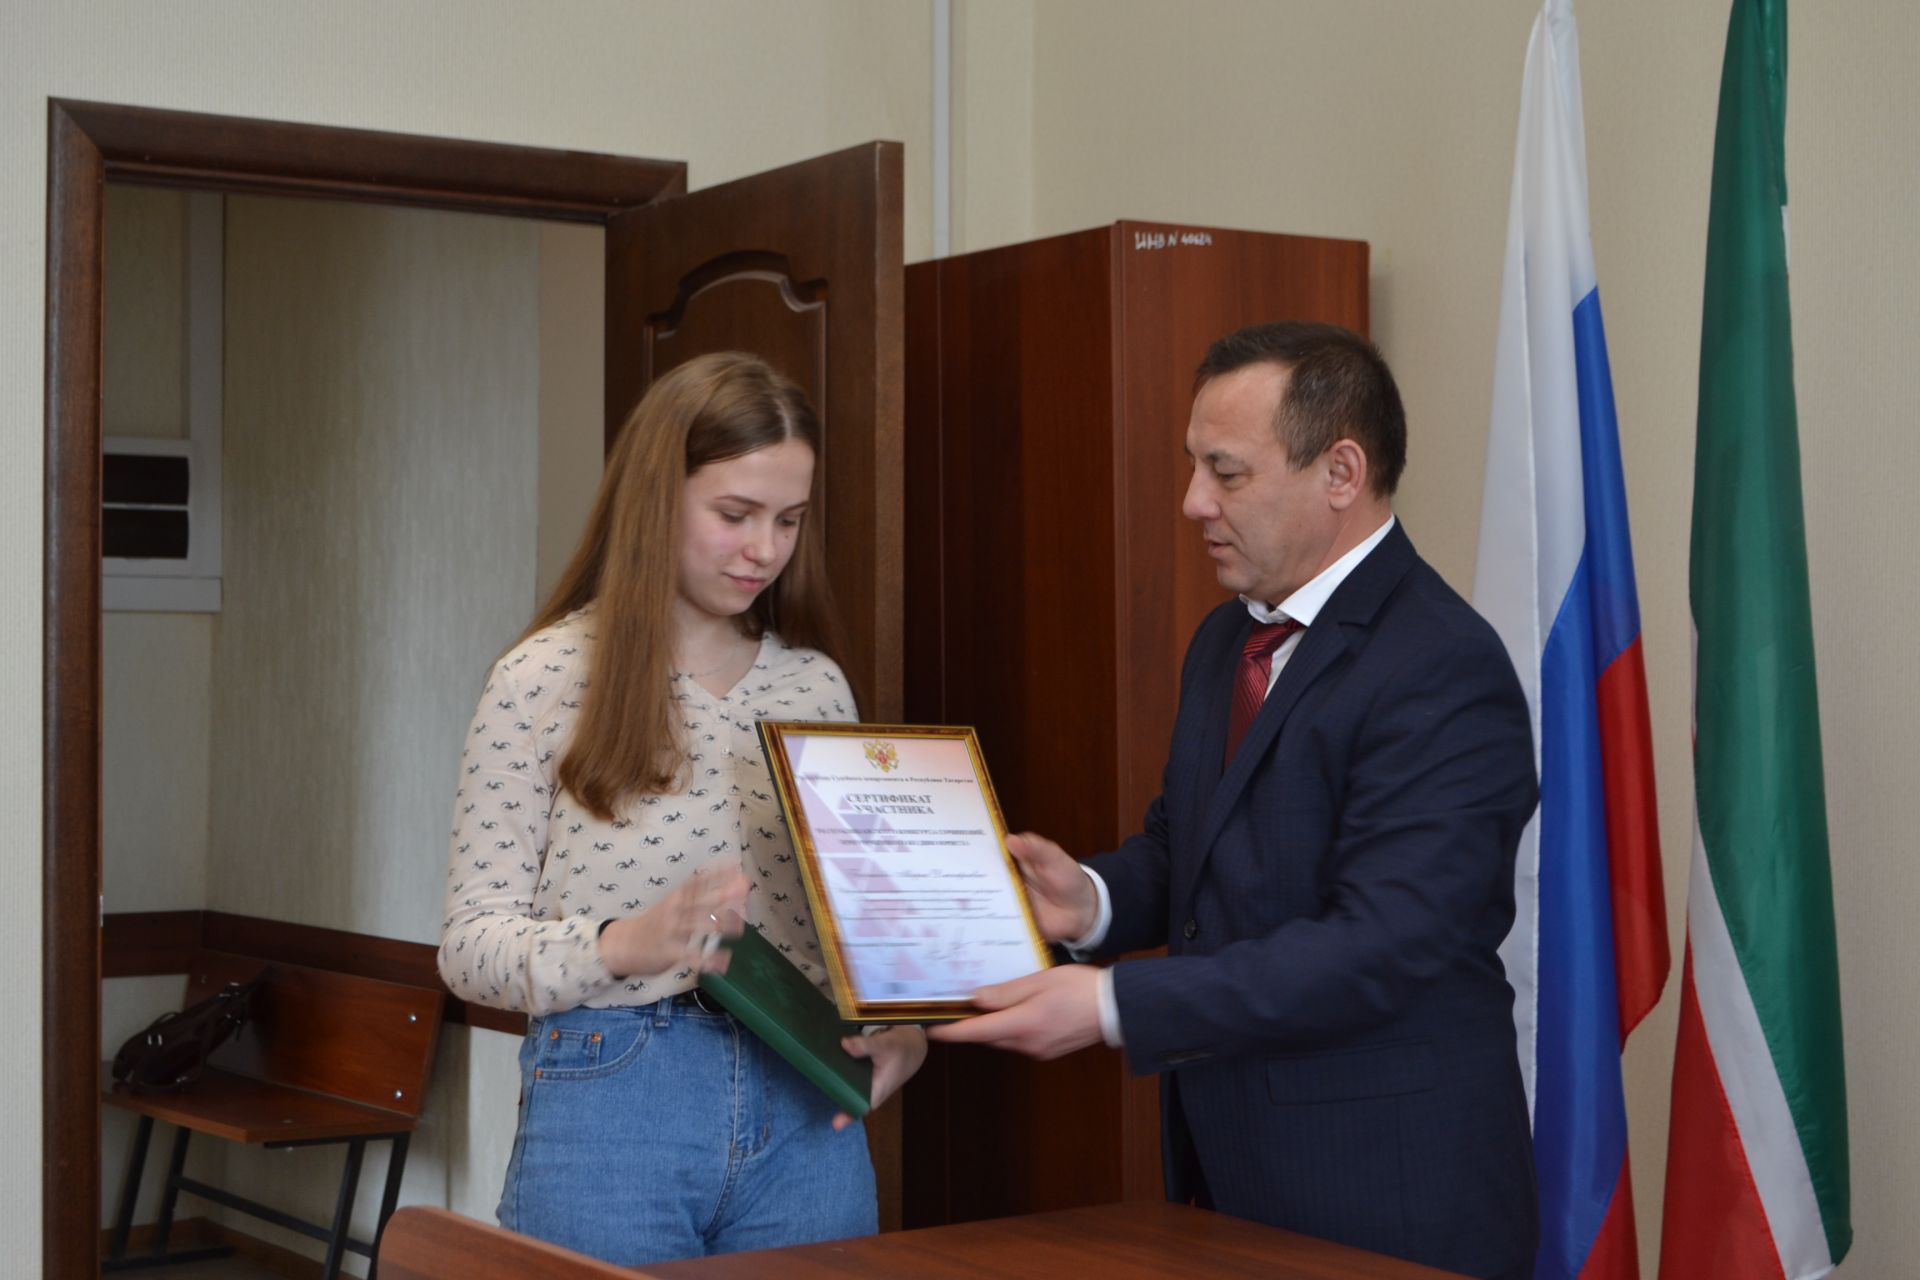 Председатель Верхнеуслонского районного суда вручил троим школьникам Сертификаты за участие в конкурсе